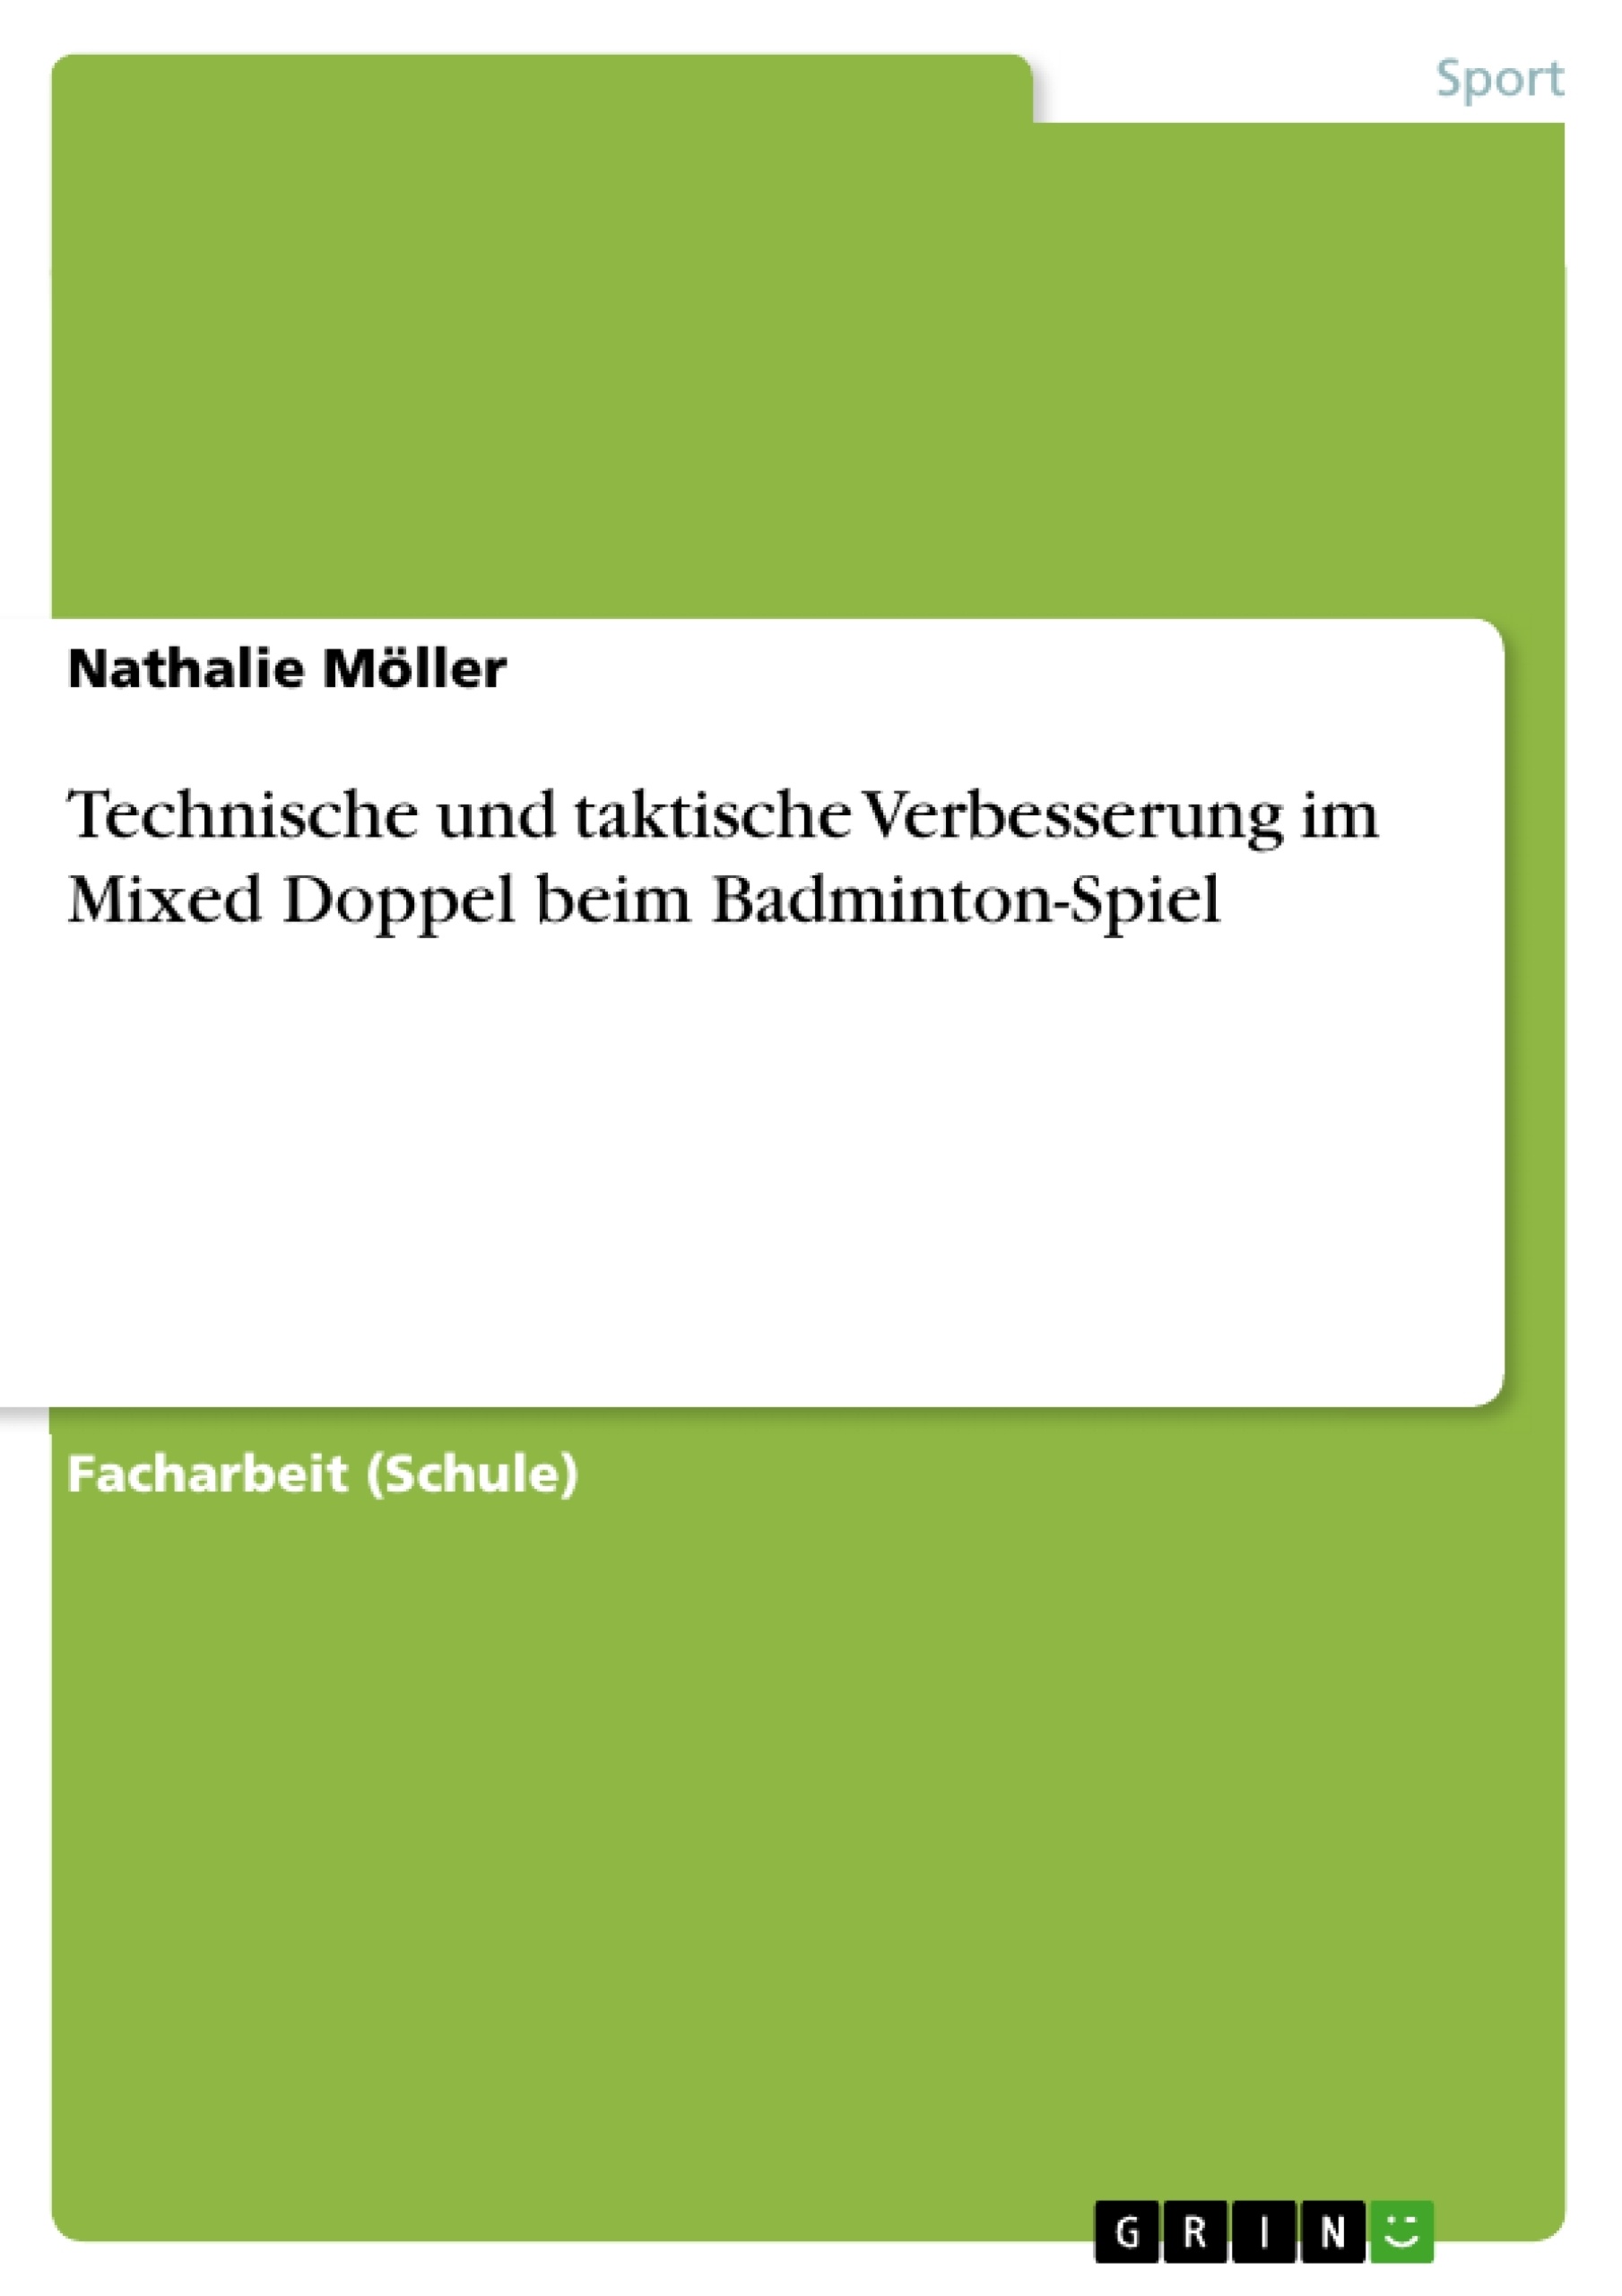 Title: Technische und taktische Verbesserung im Mixed Doppel beim Badminton-Spiel